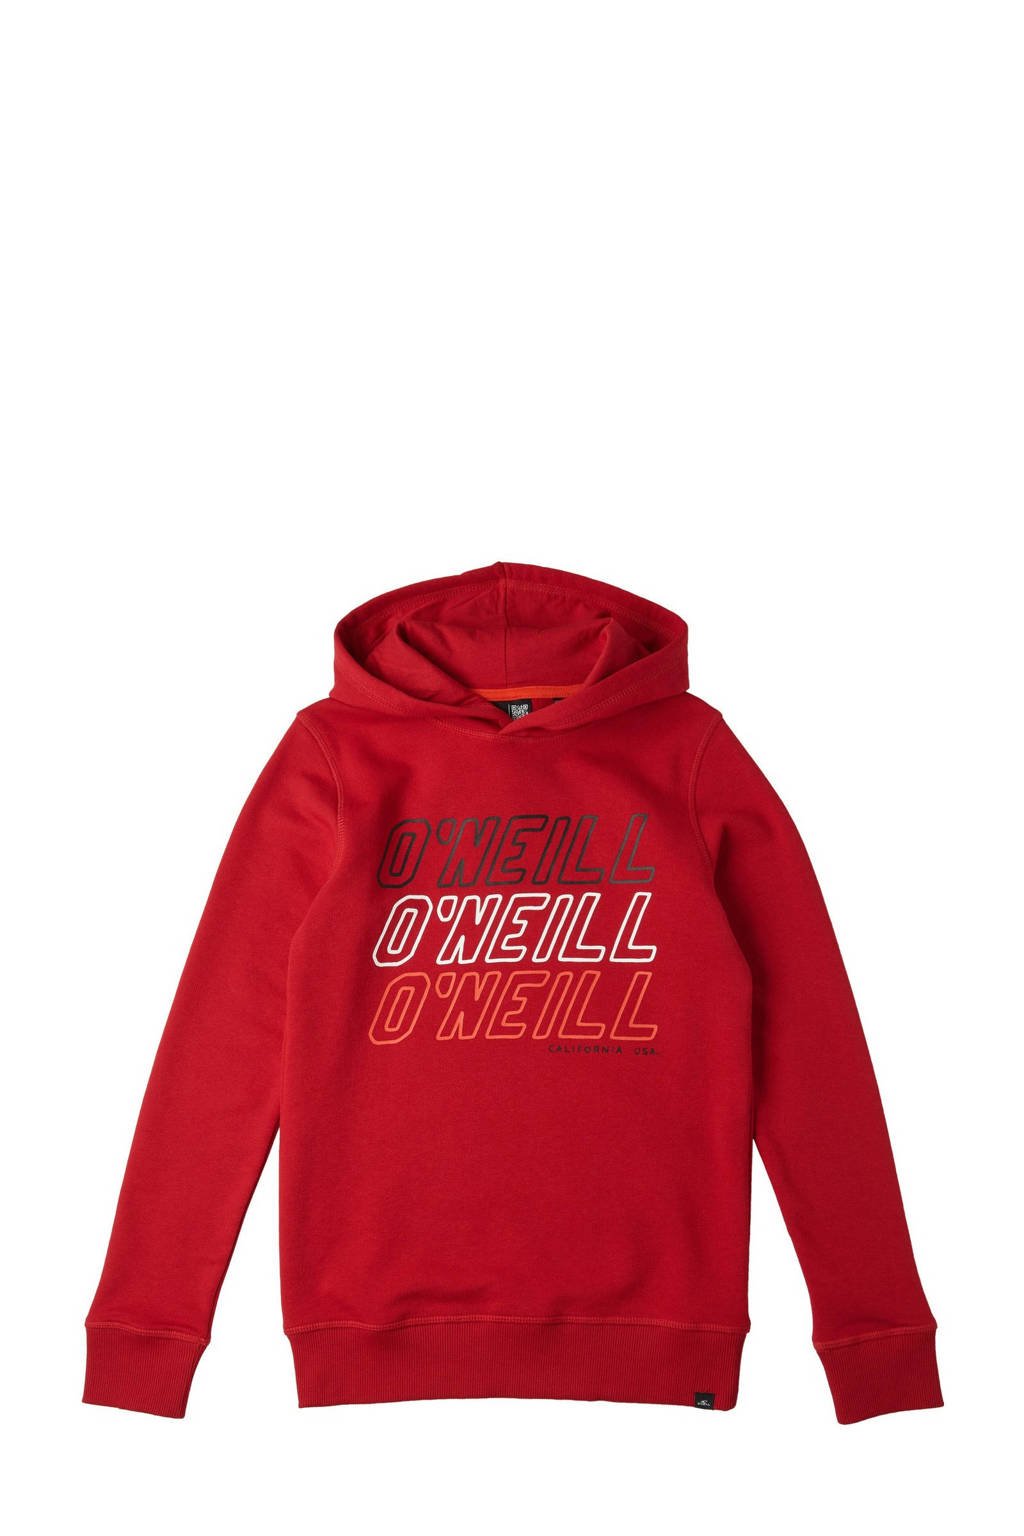 Rode jongens O'Neill hoodie All Year van sweat materiaal met printopdruk, lange mouwen, capuchon en geribde boorden